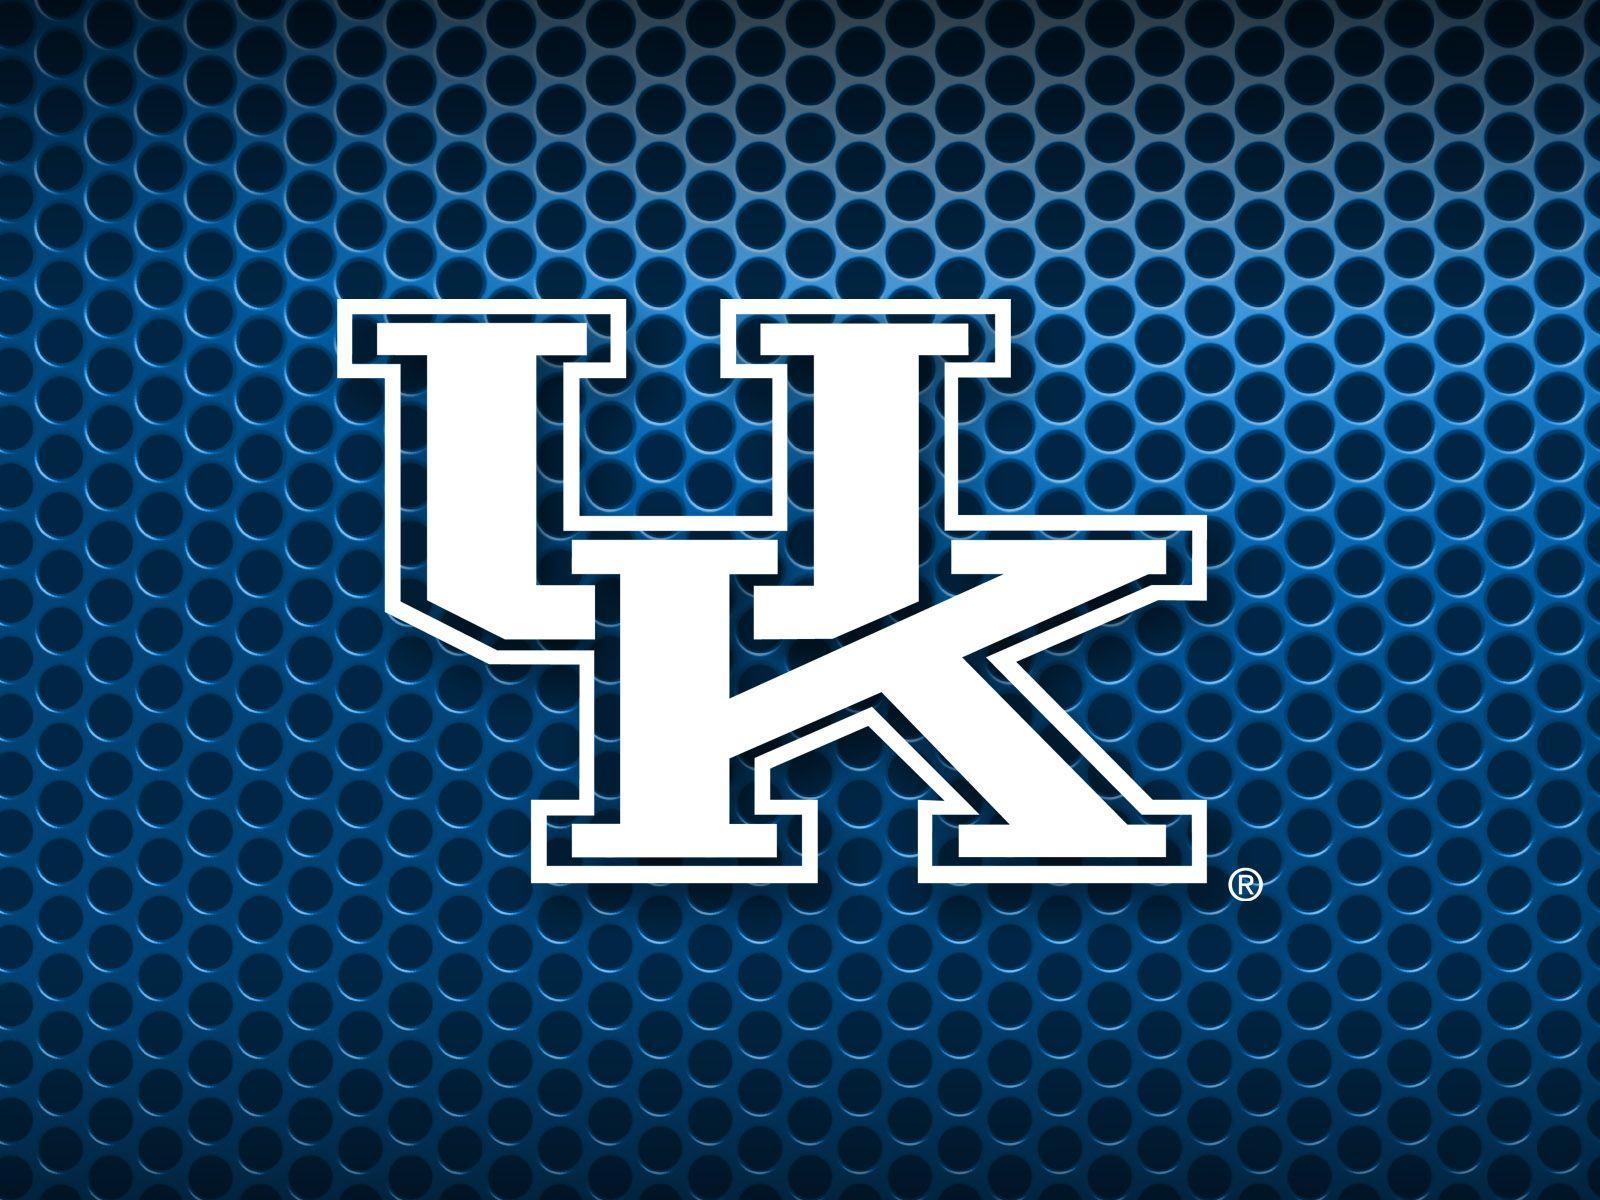 Kentucky Wildcats với chất lượng 4K sắc nét. Với hình nền này, bạn sẽ cảm nhận được sự sống động và chân thực nhất của Đại học Kentucky và đội bóng rổ Kentucky Wildcats.